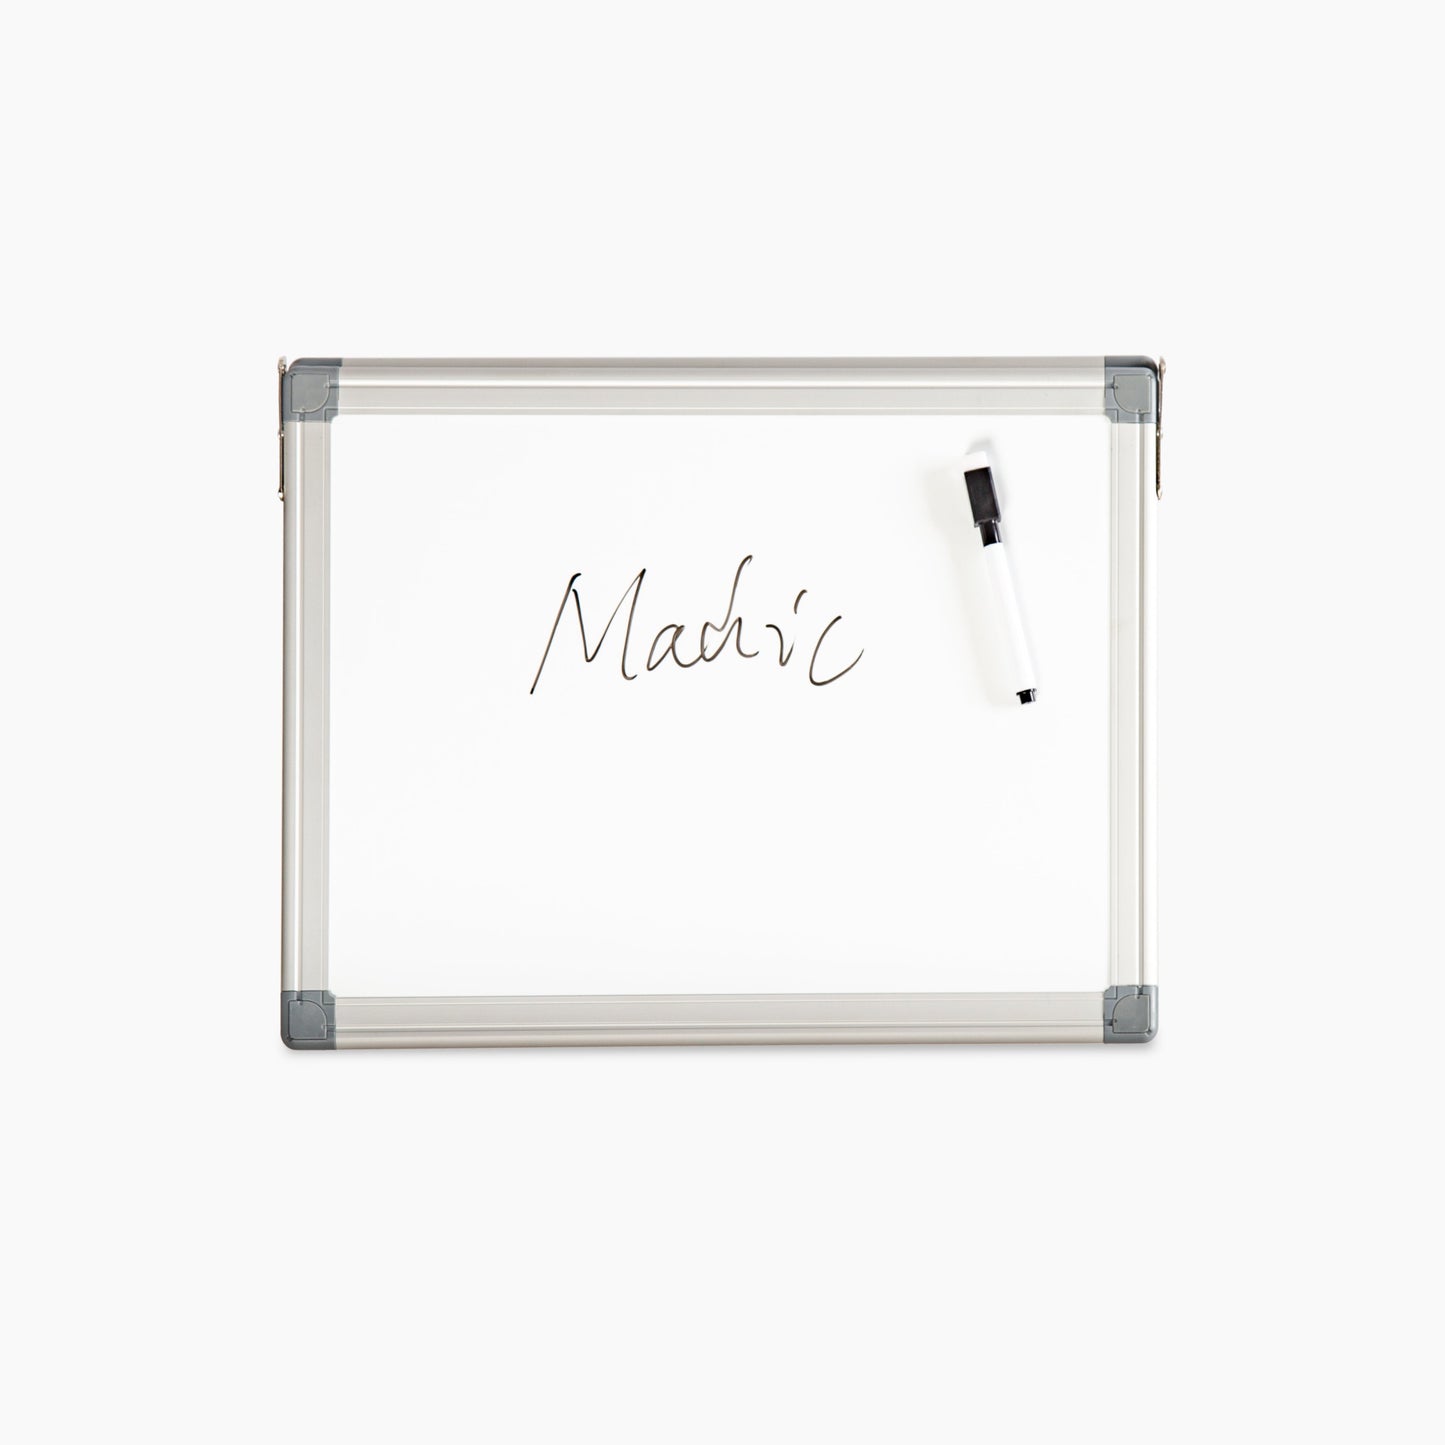 M29 180 Degree Foldable Magnetic Whiteboard Easel Portable Aluminum Frame Desktop Memo Board - Premium magnetic whiteboard from Madic Whiteboard - Madic Whiteboard